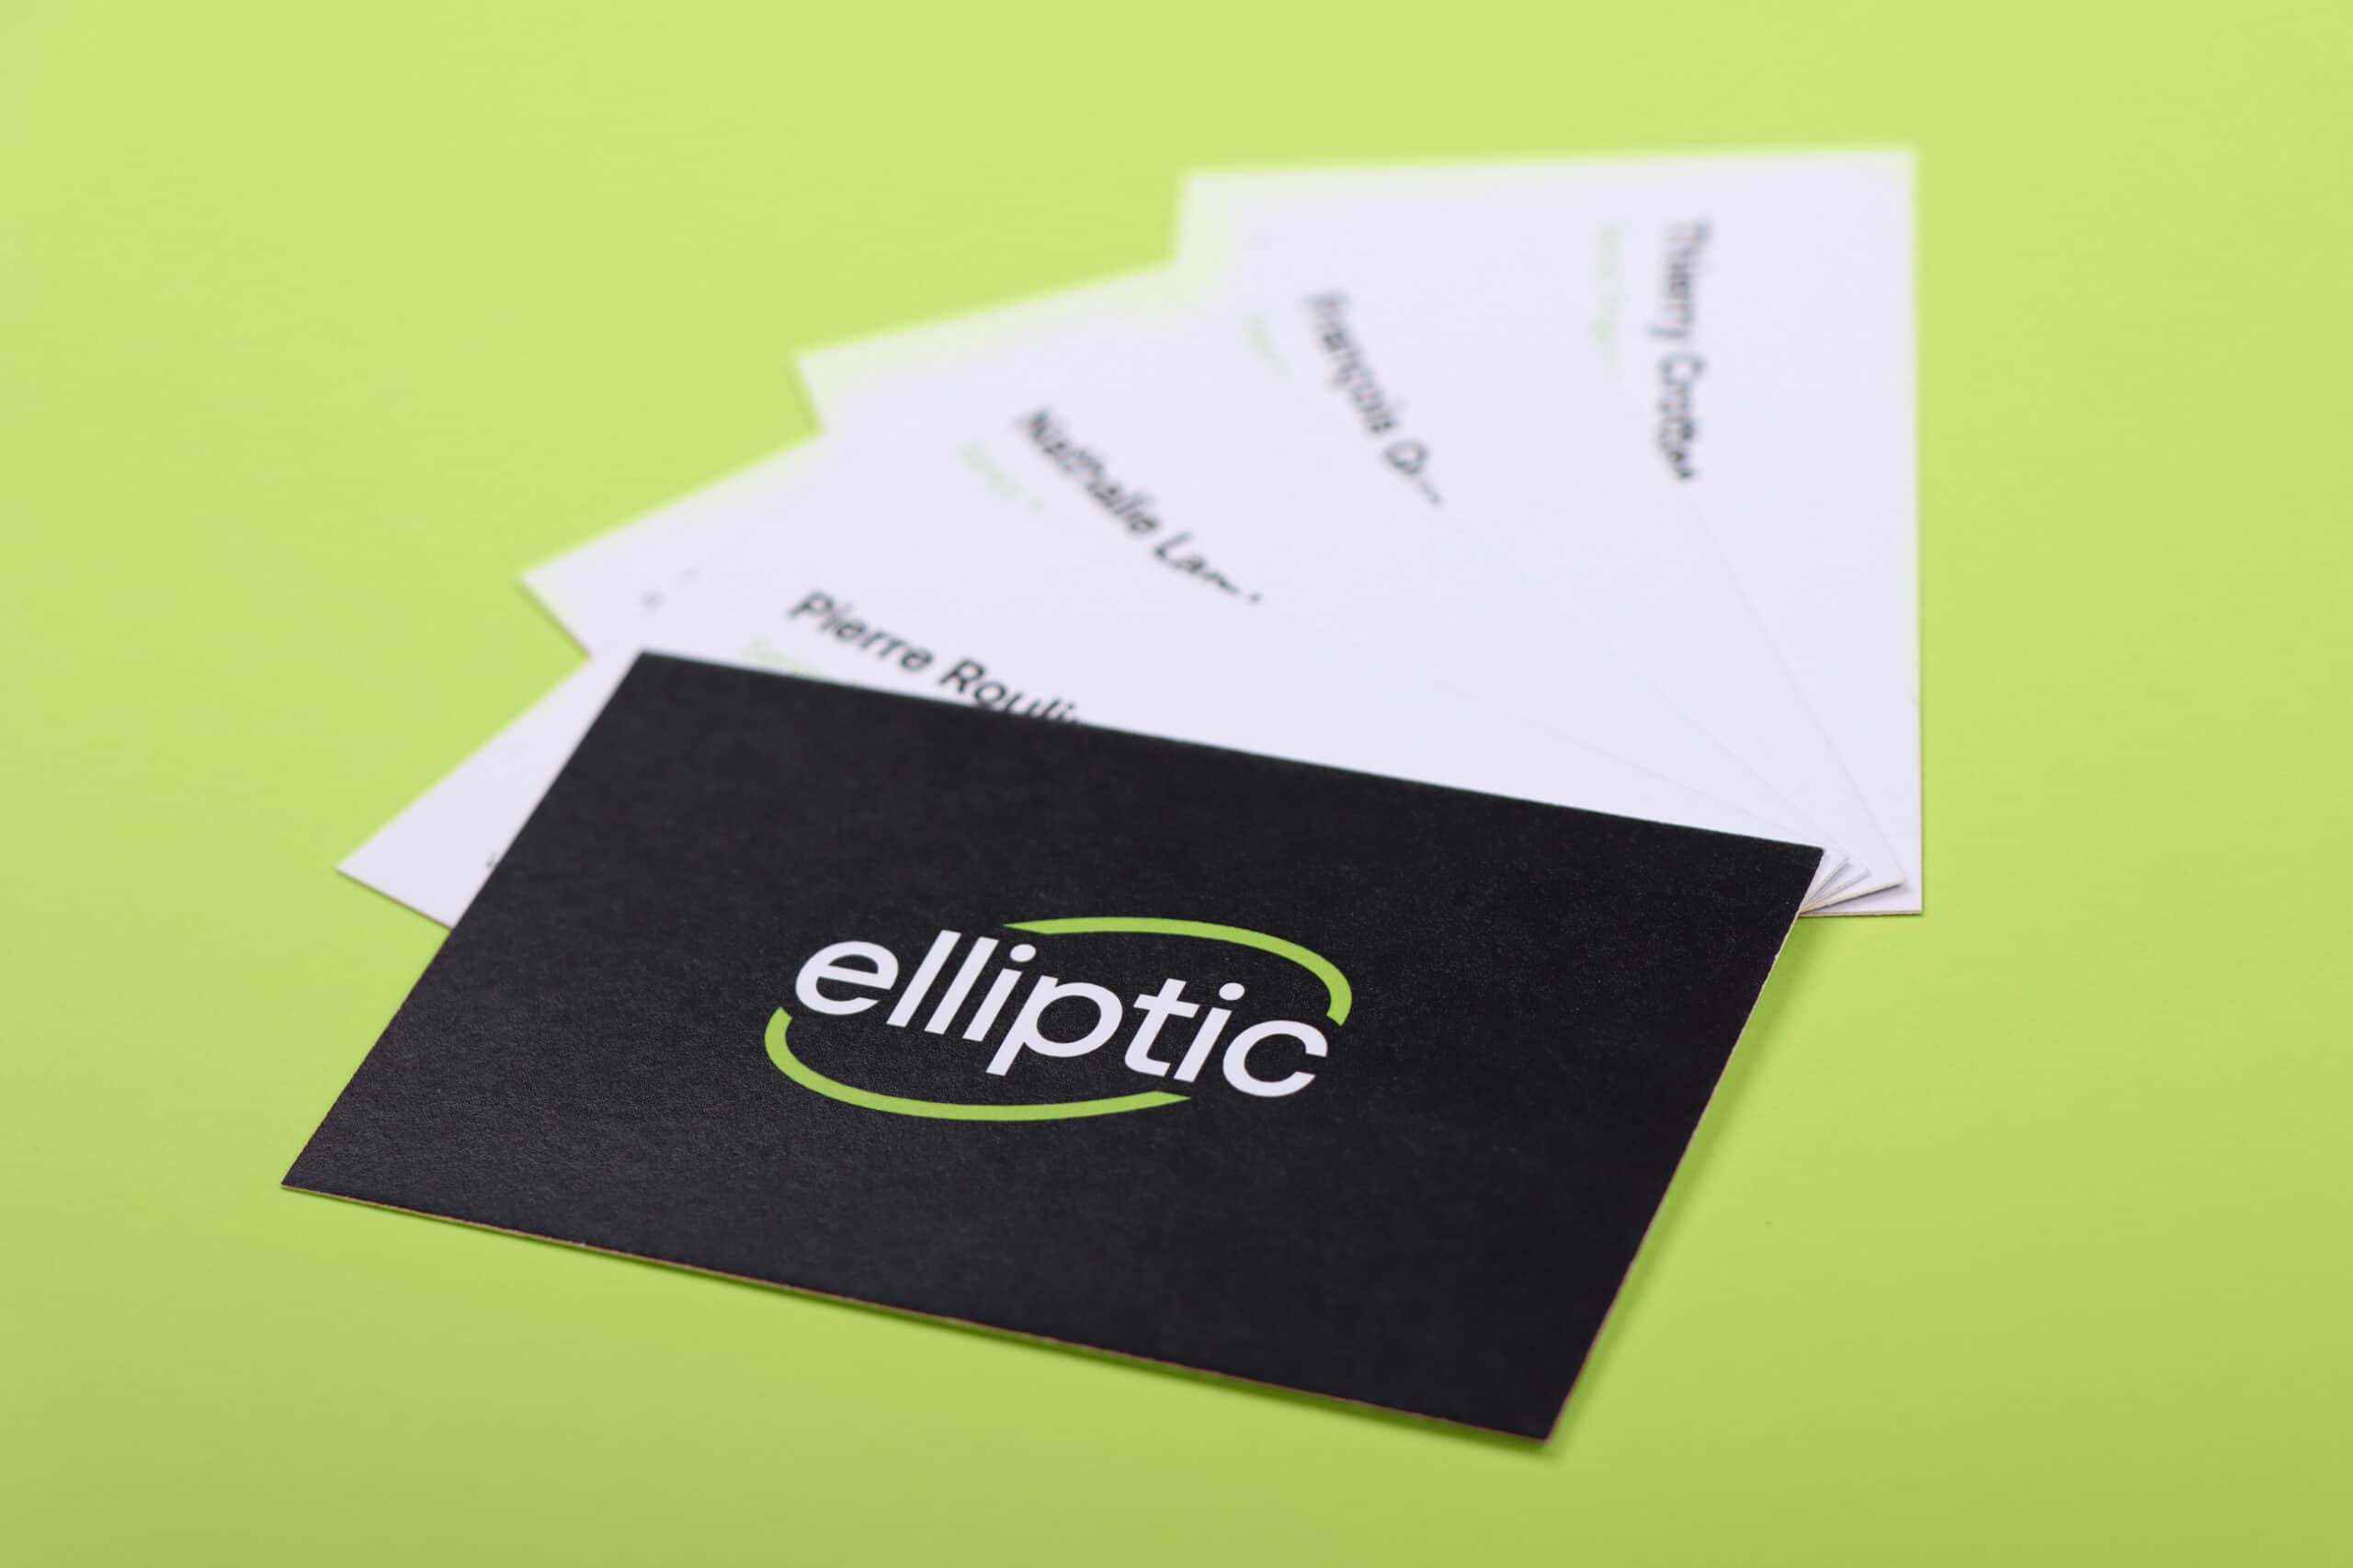 Cartes de visites Elliptic disposées en éventail, avec le logo sur le recto et les informations personnelles sur les versos.